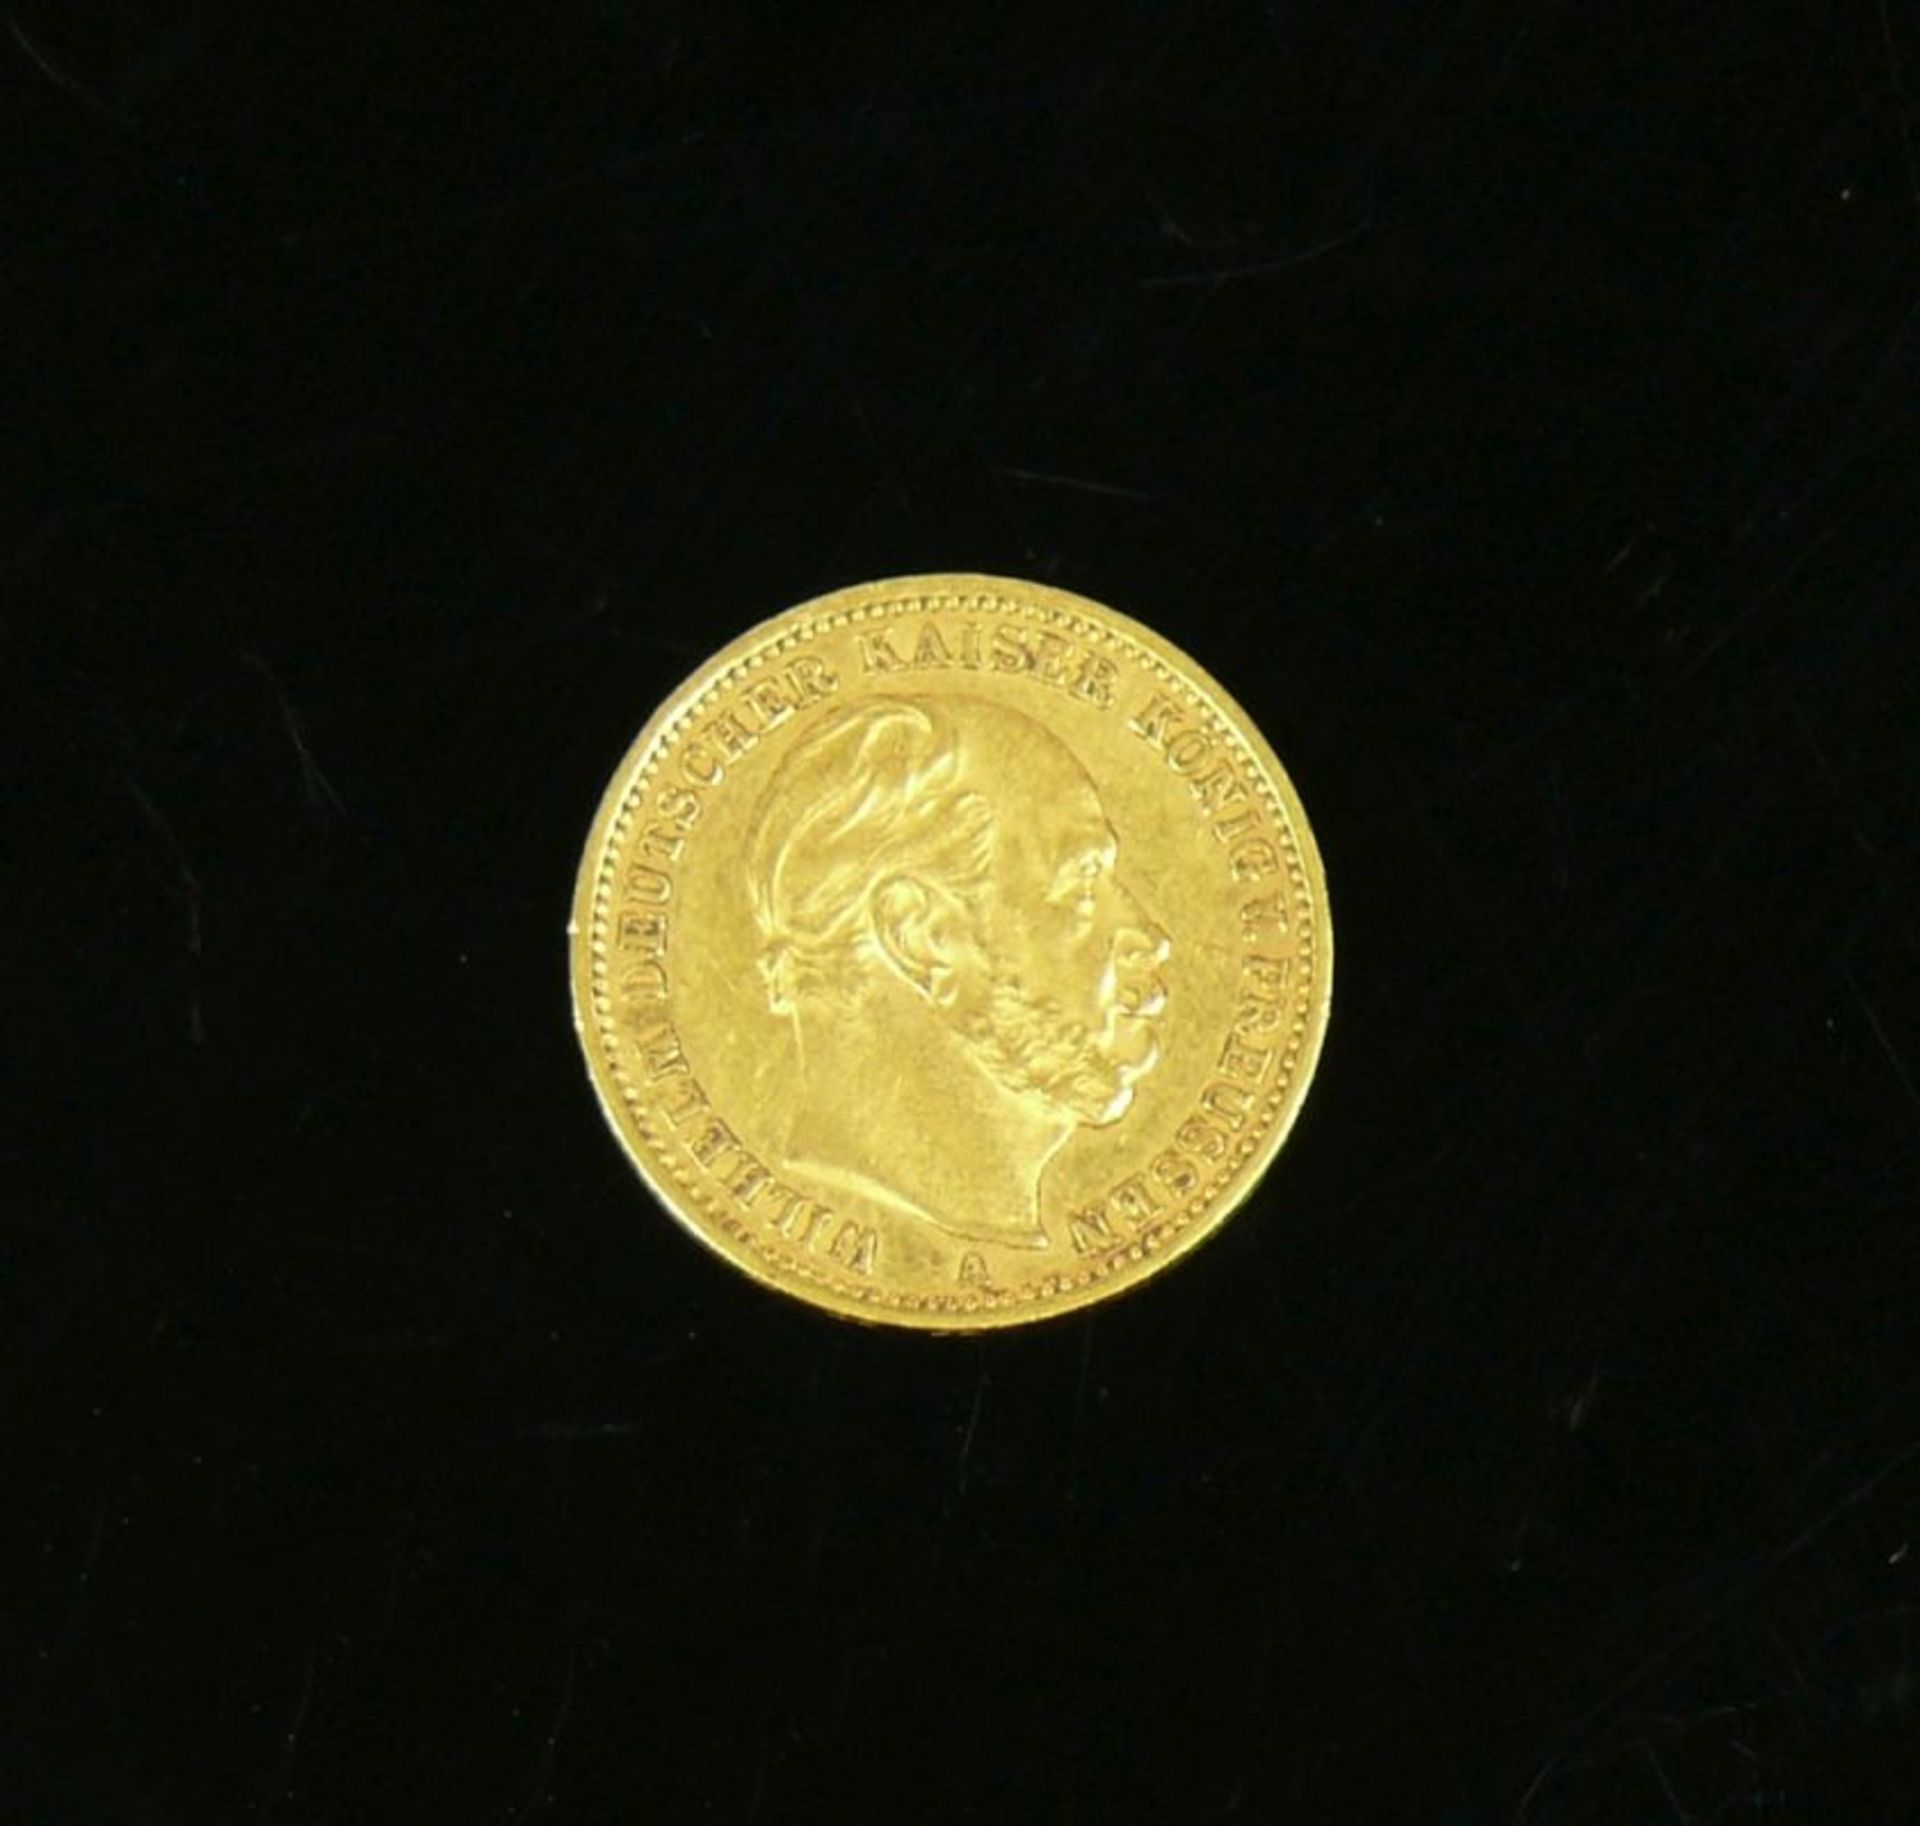 Goldmünze20 Mark; 1872, Wilhelm Deutscher Kaiser König von Preussen A; ss/vz - Bild 2 aus 2